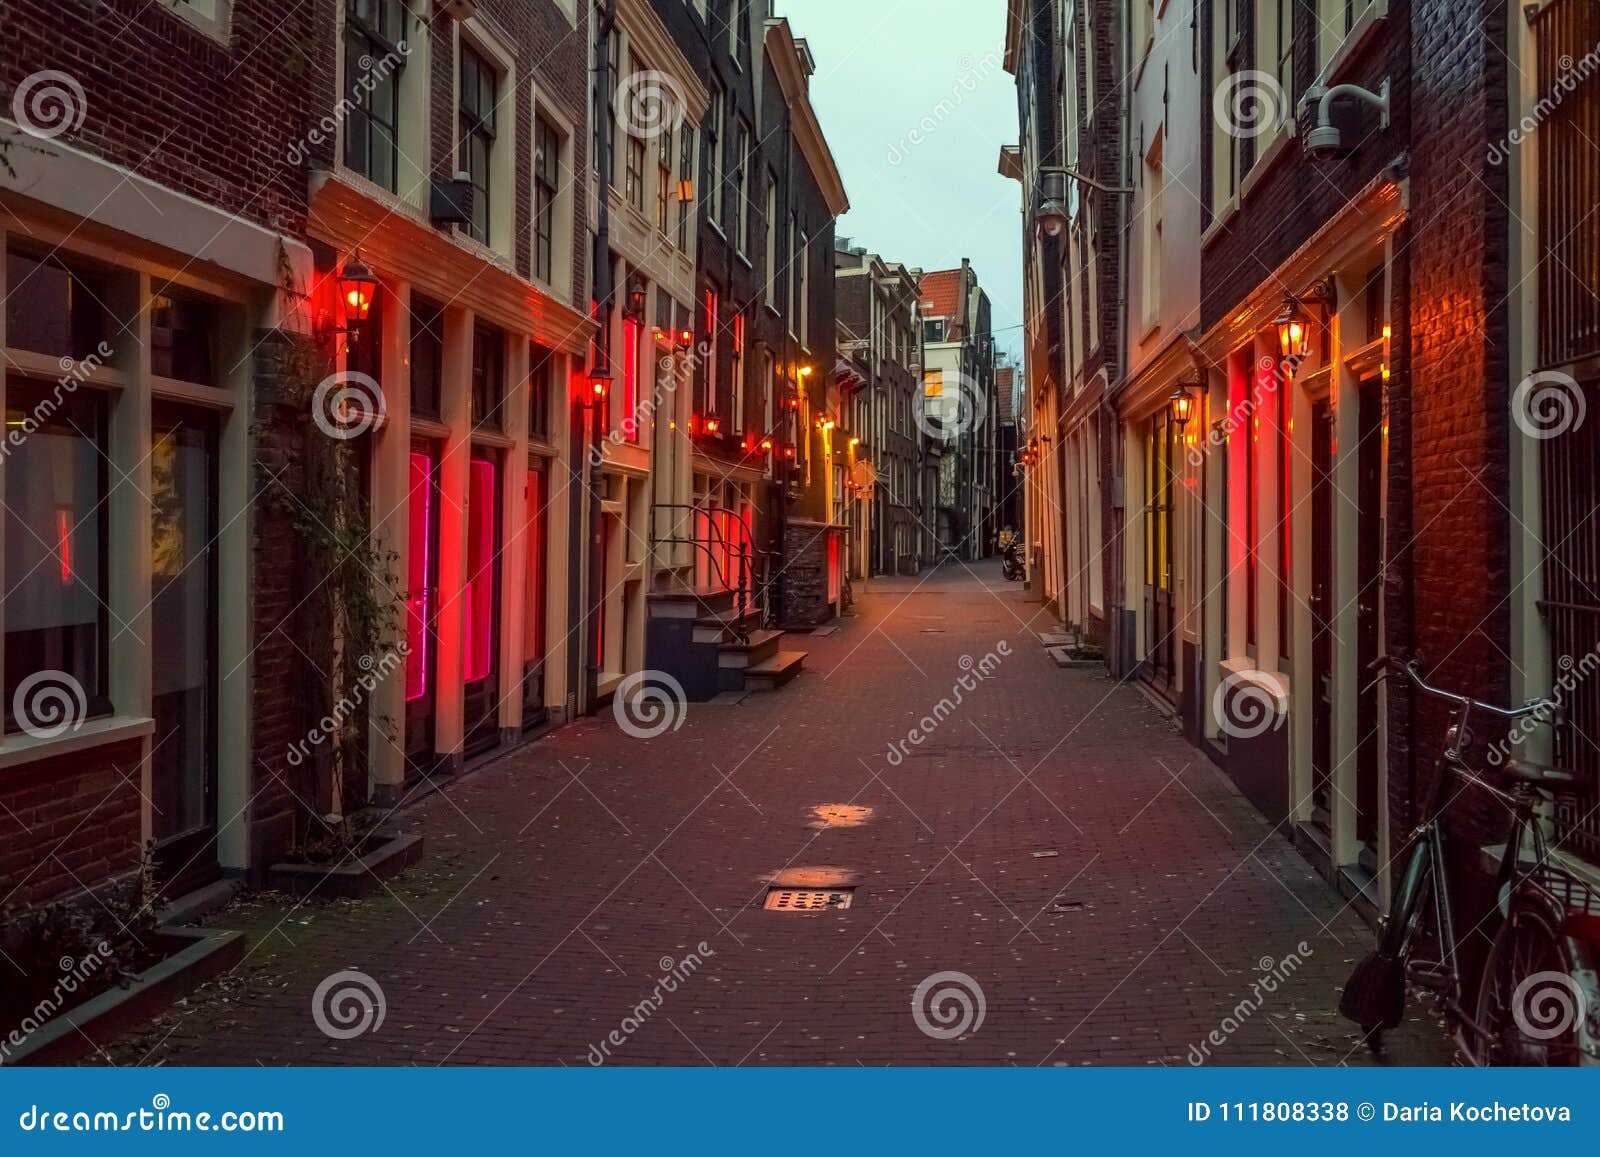 2023阿姆斯特丹红灯区游玩攻略,荷兰因为维度特别高，黑天特...【去哪儿攻略】